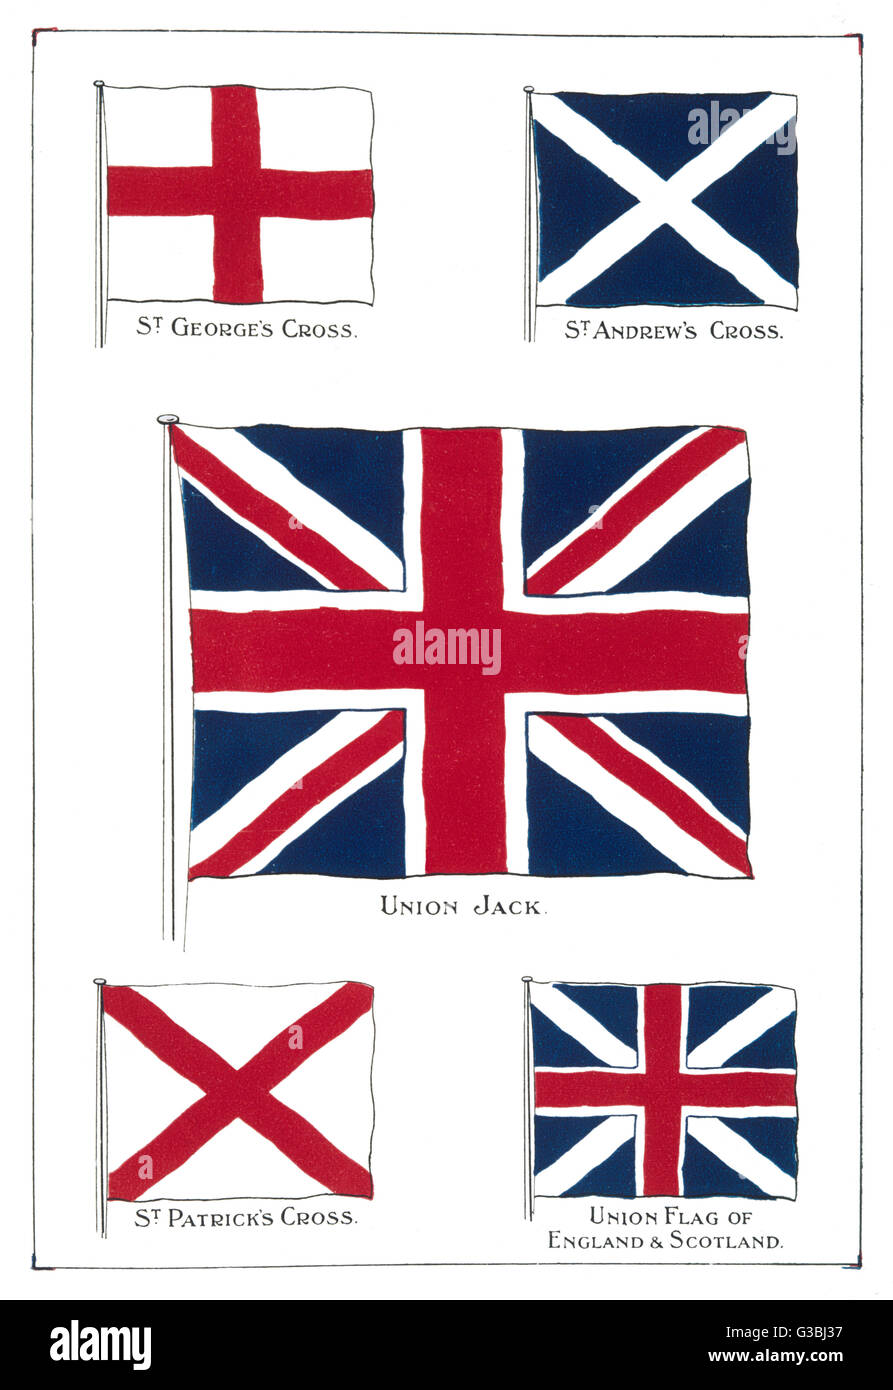 Banderas del Reino Unido - la Union Jack y sus componentes. Fecha: a finales del siglo XIX. Foto de stock